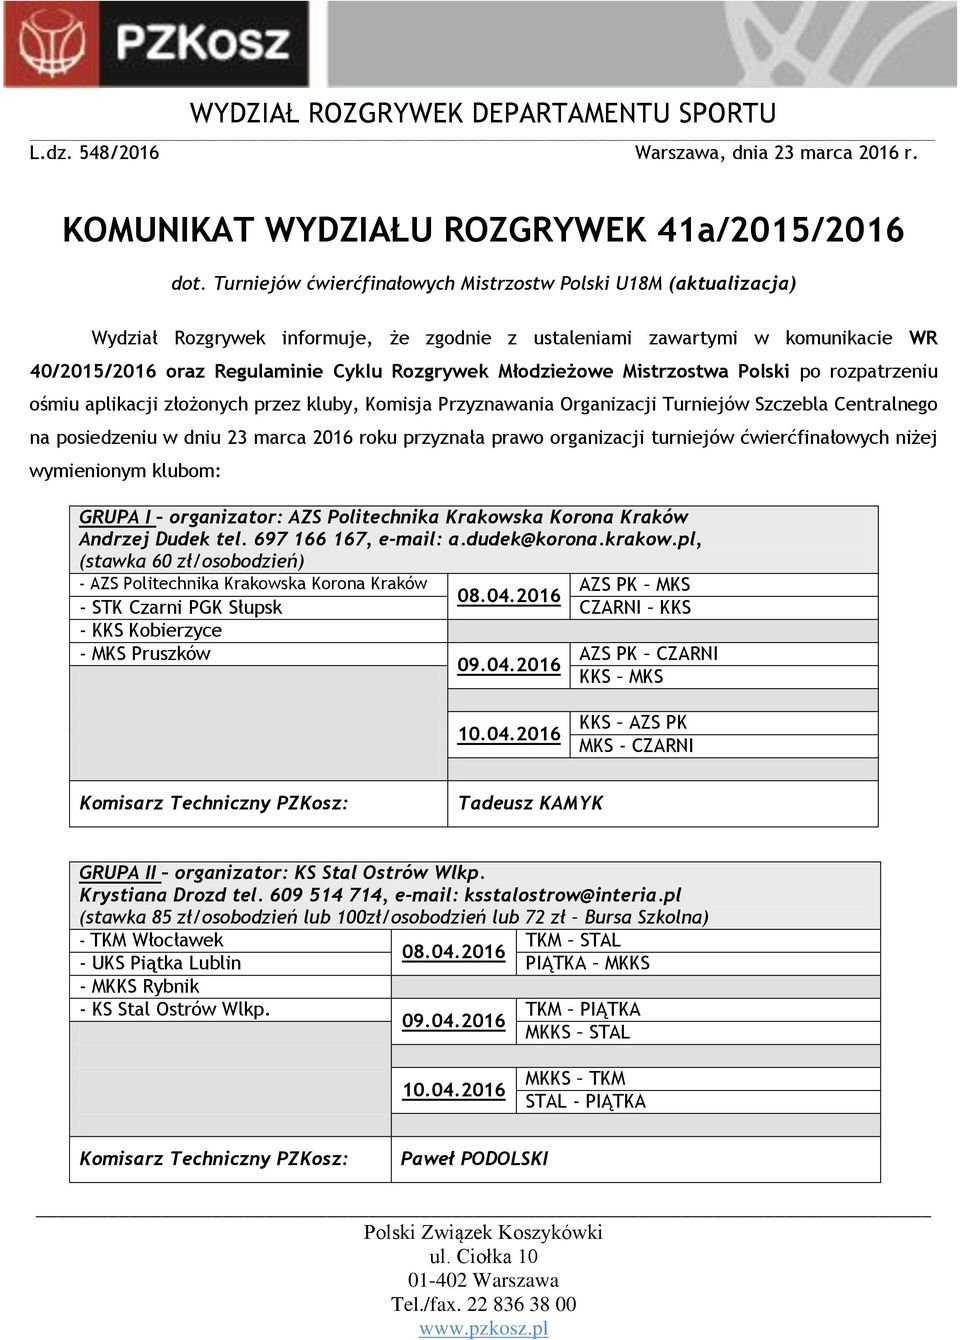 Młodzieżowe Mistrzostwa Polski po rozpatrzeniu ośmiu aplikacji złożonych przez kluby, Komisja Przyznawania Organizacji Turniejów Szczebla Centralnego na posiedzeniu w dniu 23 marca 2016 roku